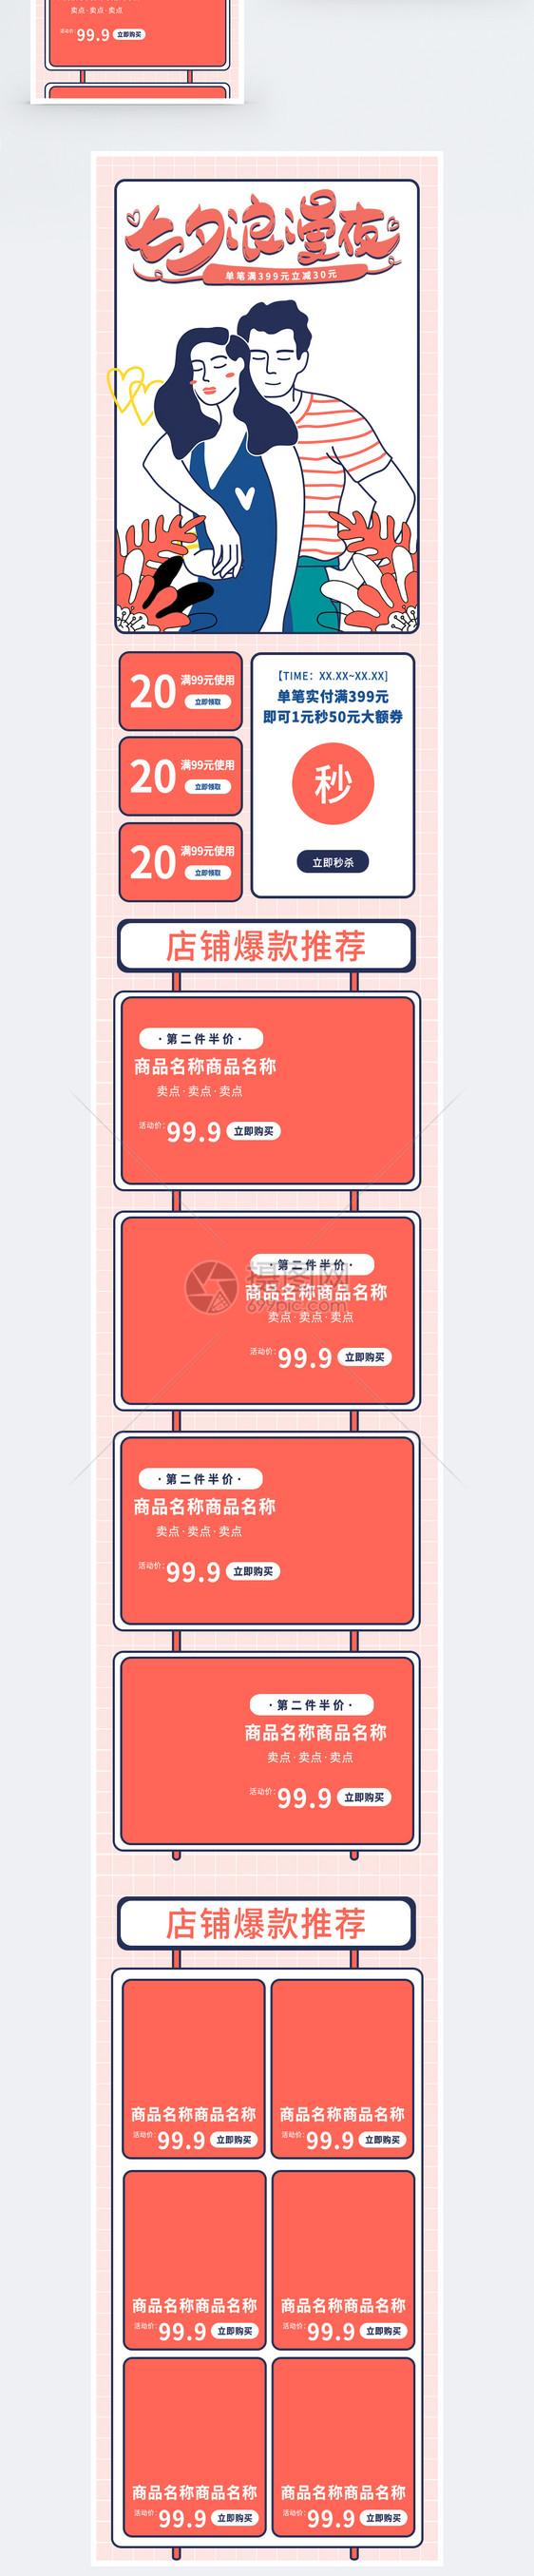 七夕浪漫夜情人节商品手机端模板图片